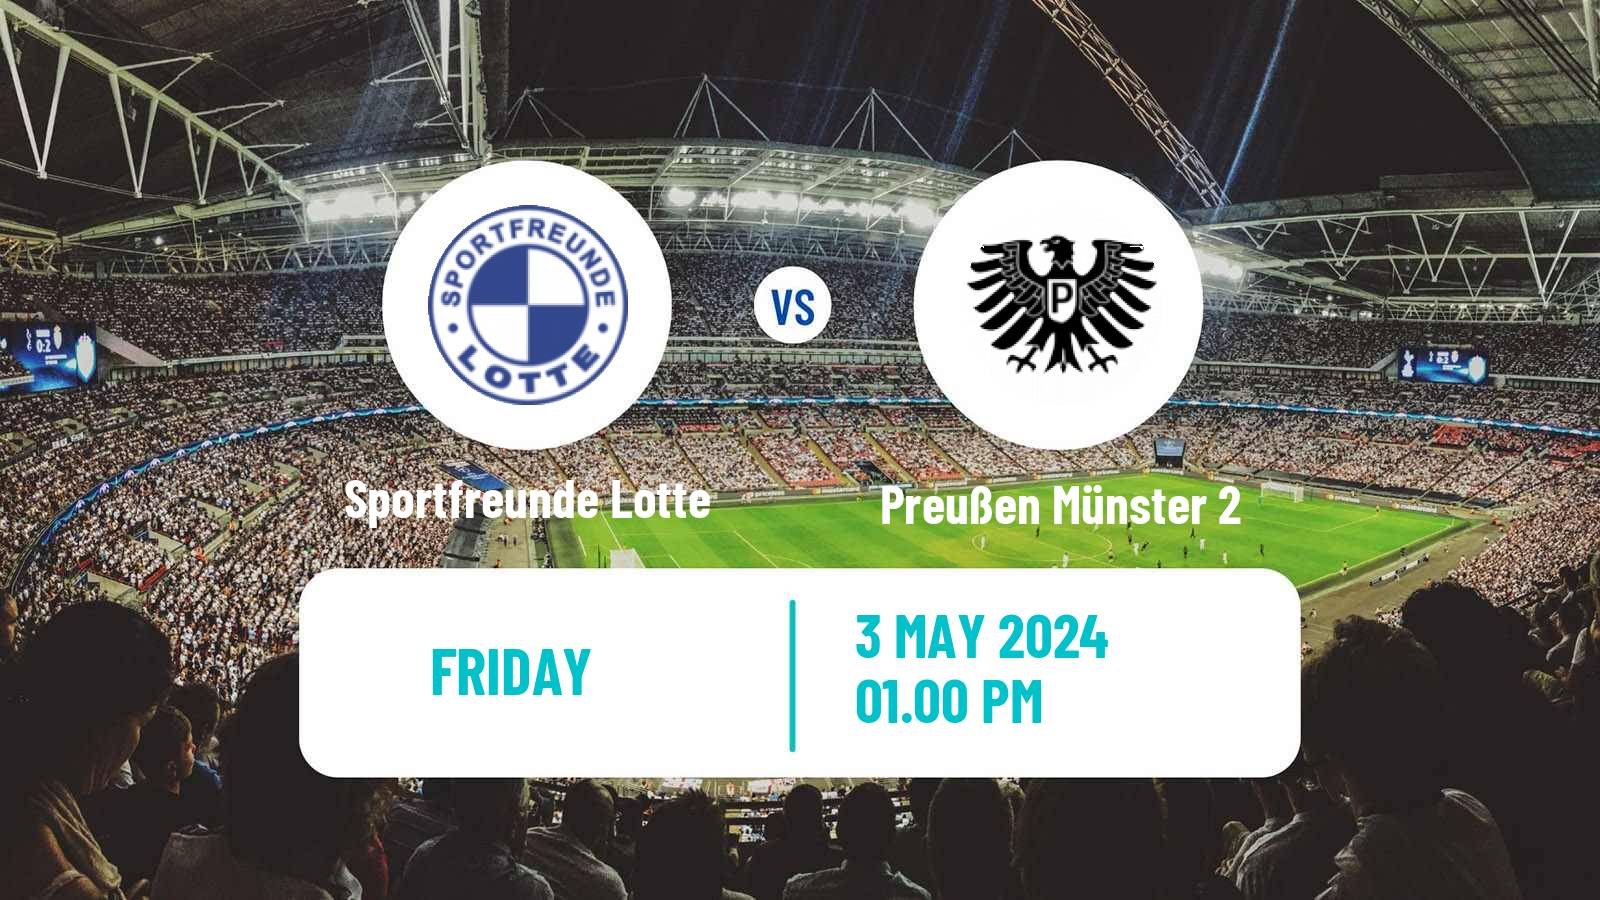 Soccer German Oberliga Westfalen Sportfreunde Lotte - Preußen Münster 2